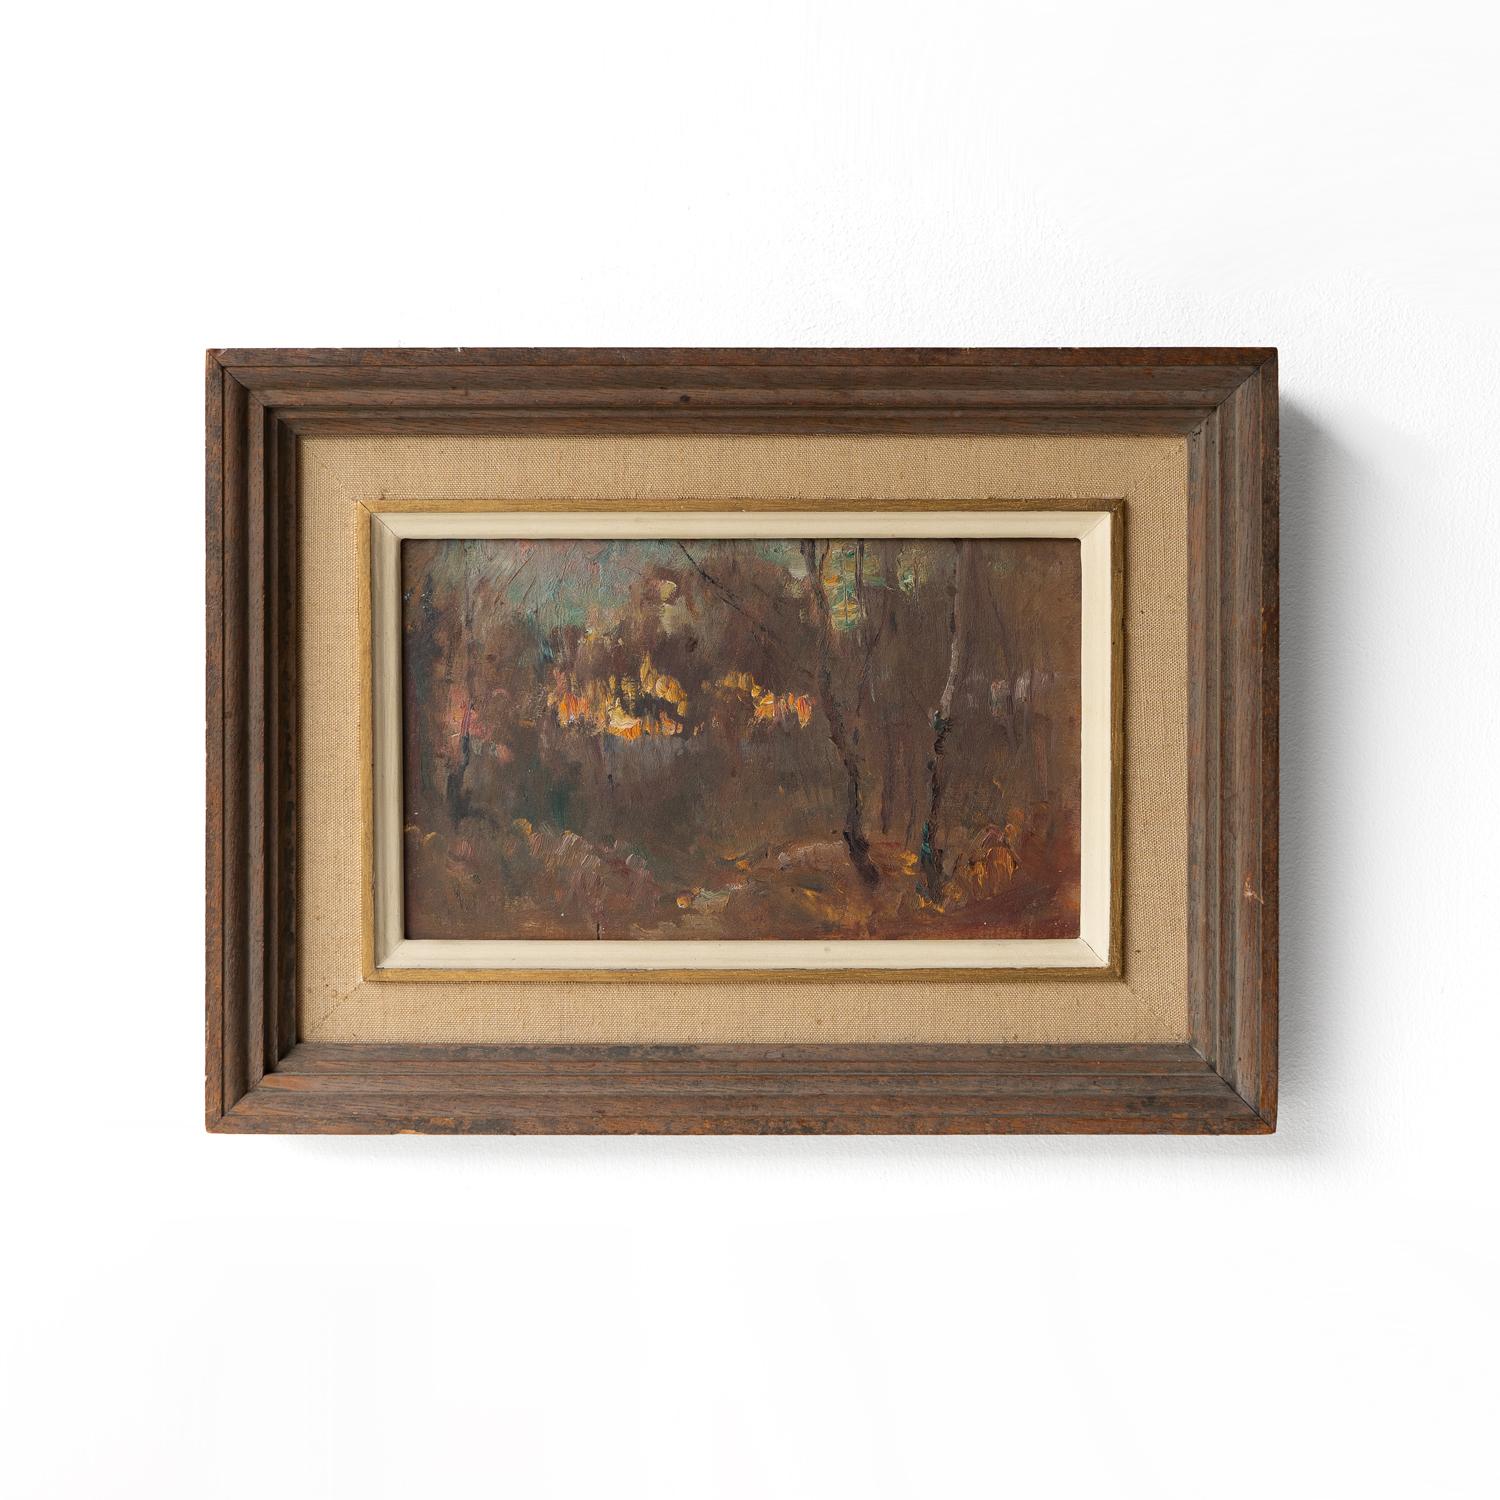 HUILE ANCIENNE ORIGINALE DE JAMES HERBERT SNELL (1861-1935)
Représentation d'un feu vu à travers les arbres dans un paysage hivernal aux teintes bleutées.

Peint dans un style impressionniste libre et confiant, typique du travail ultérieur de